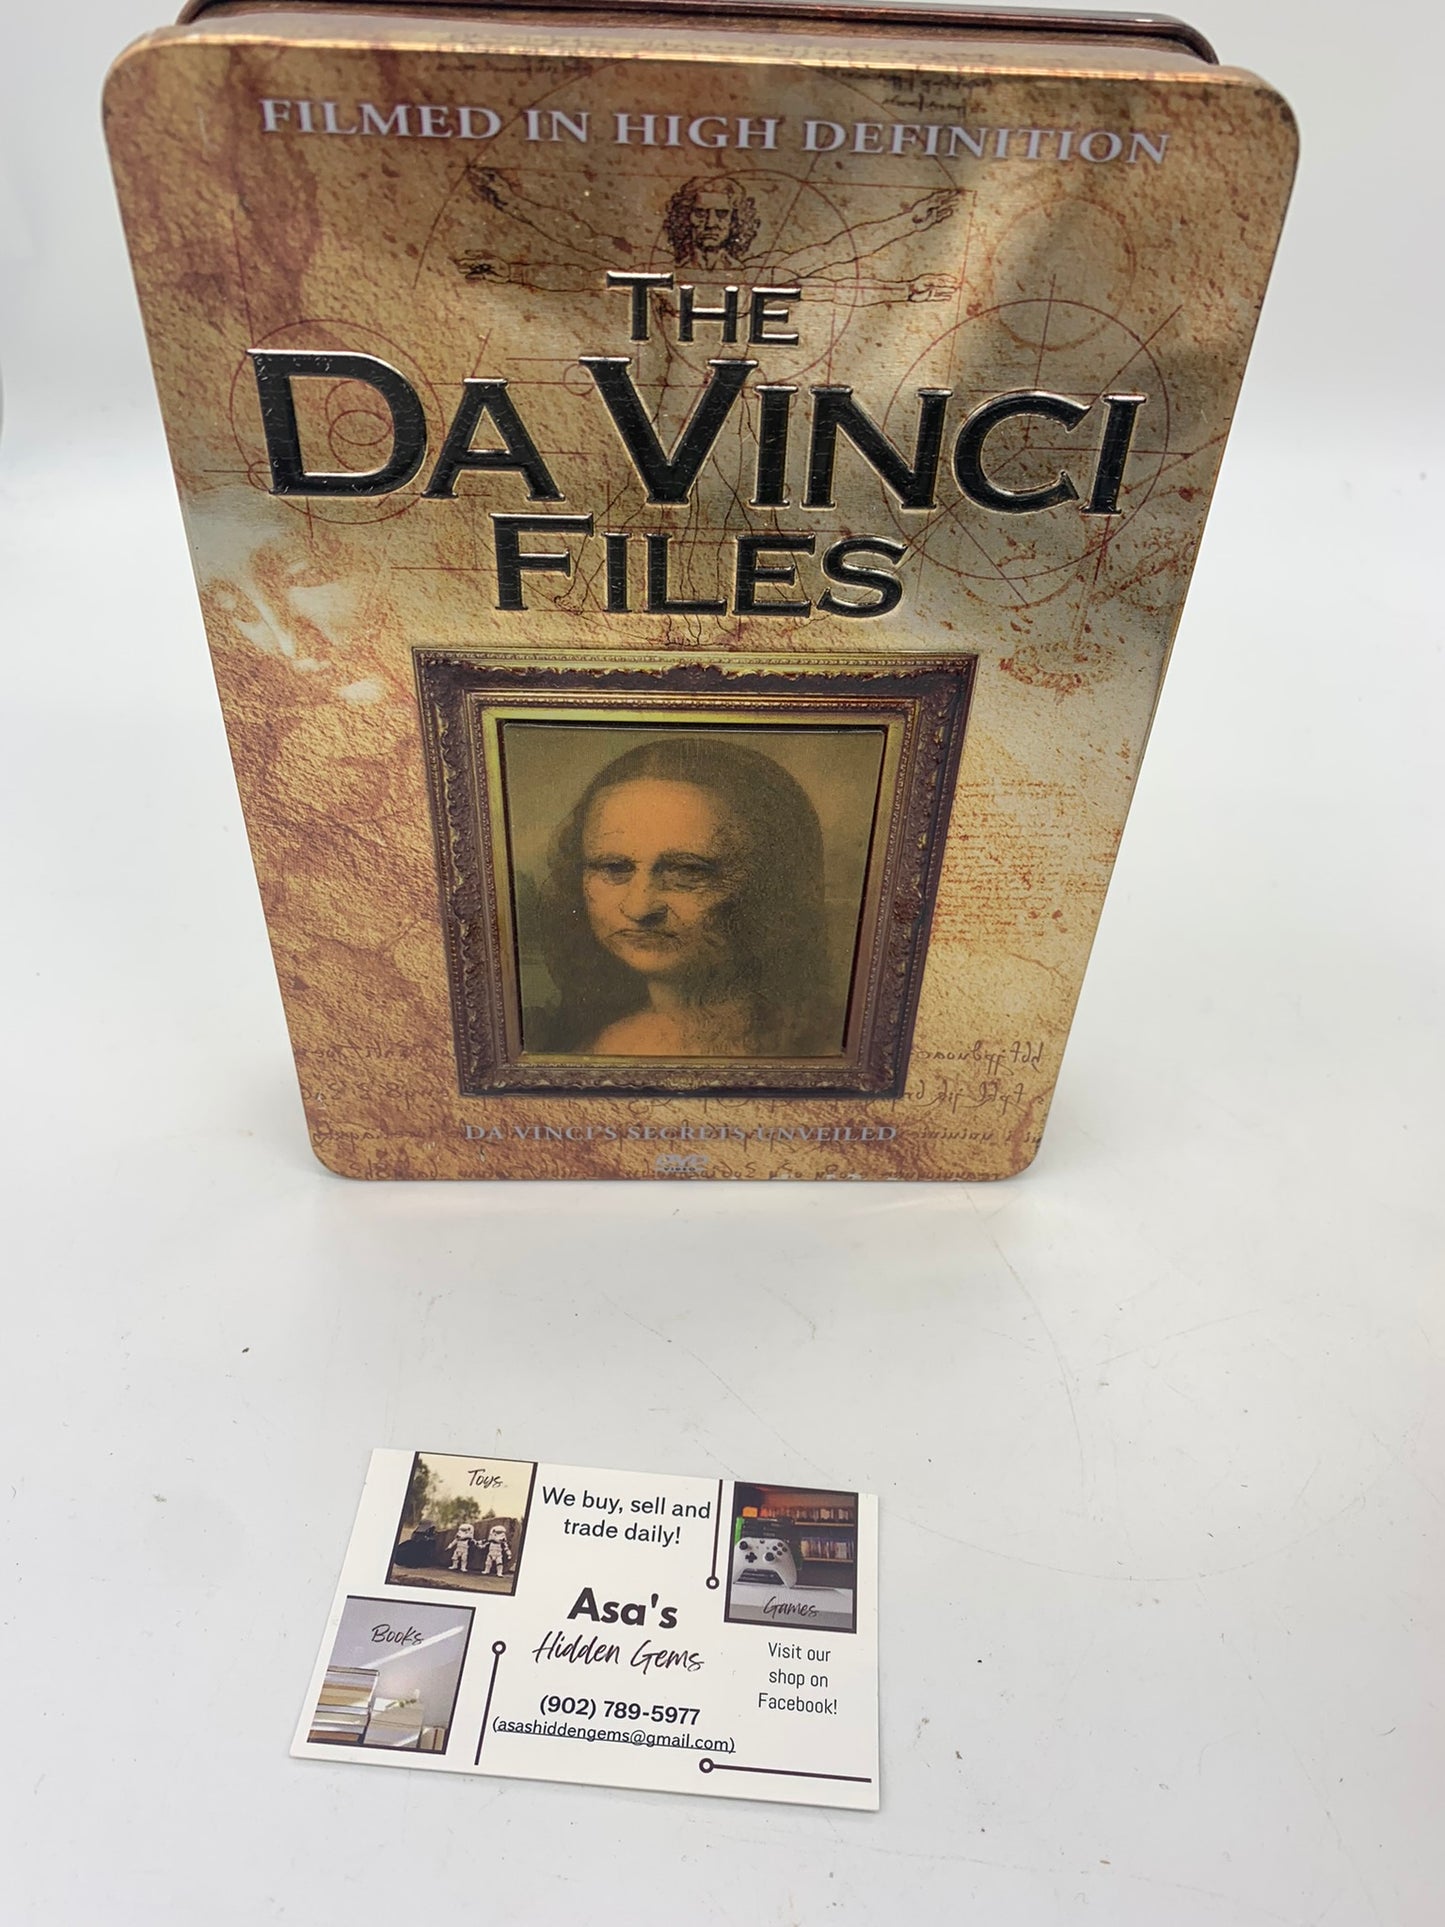 The Da Vinci Files Secrets Unveiled. 2006. 5 disks